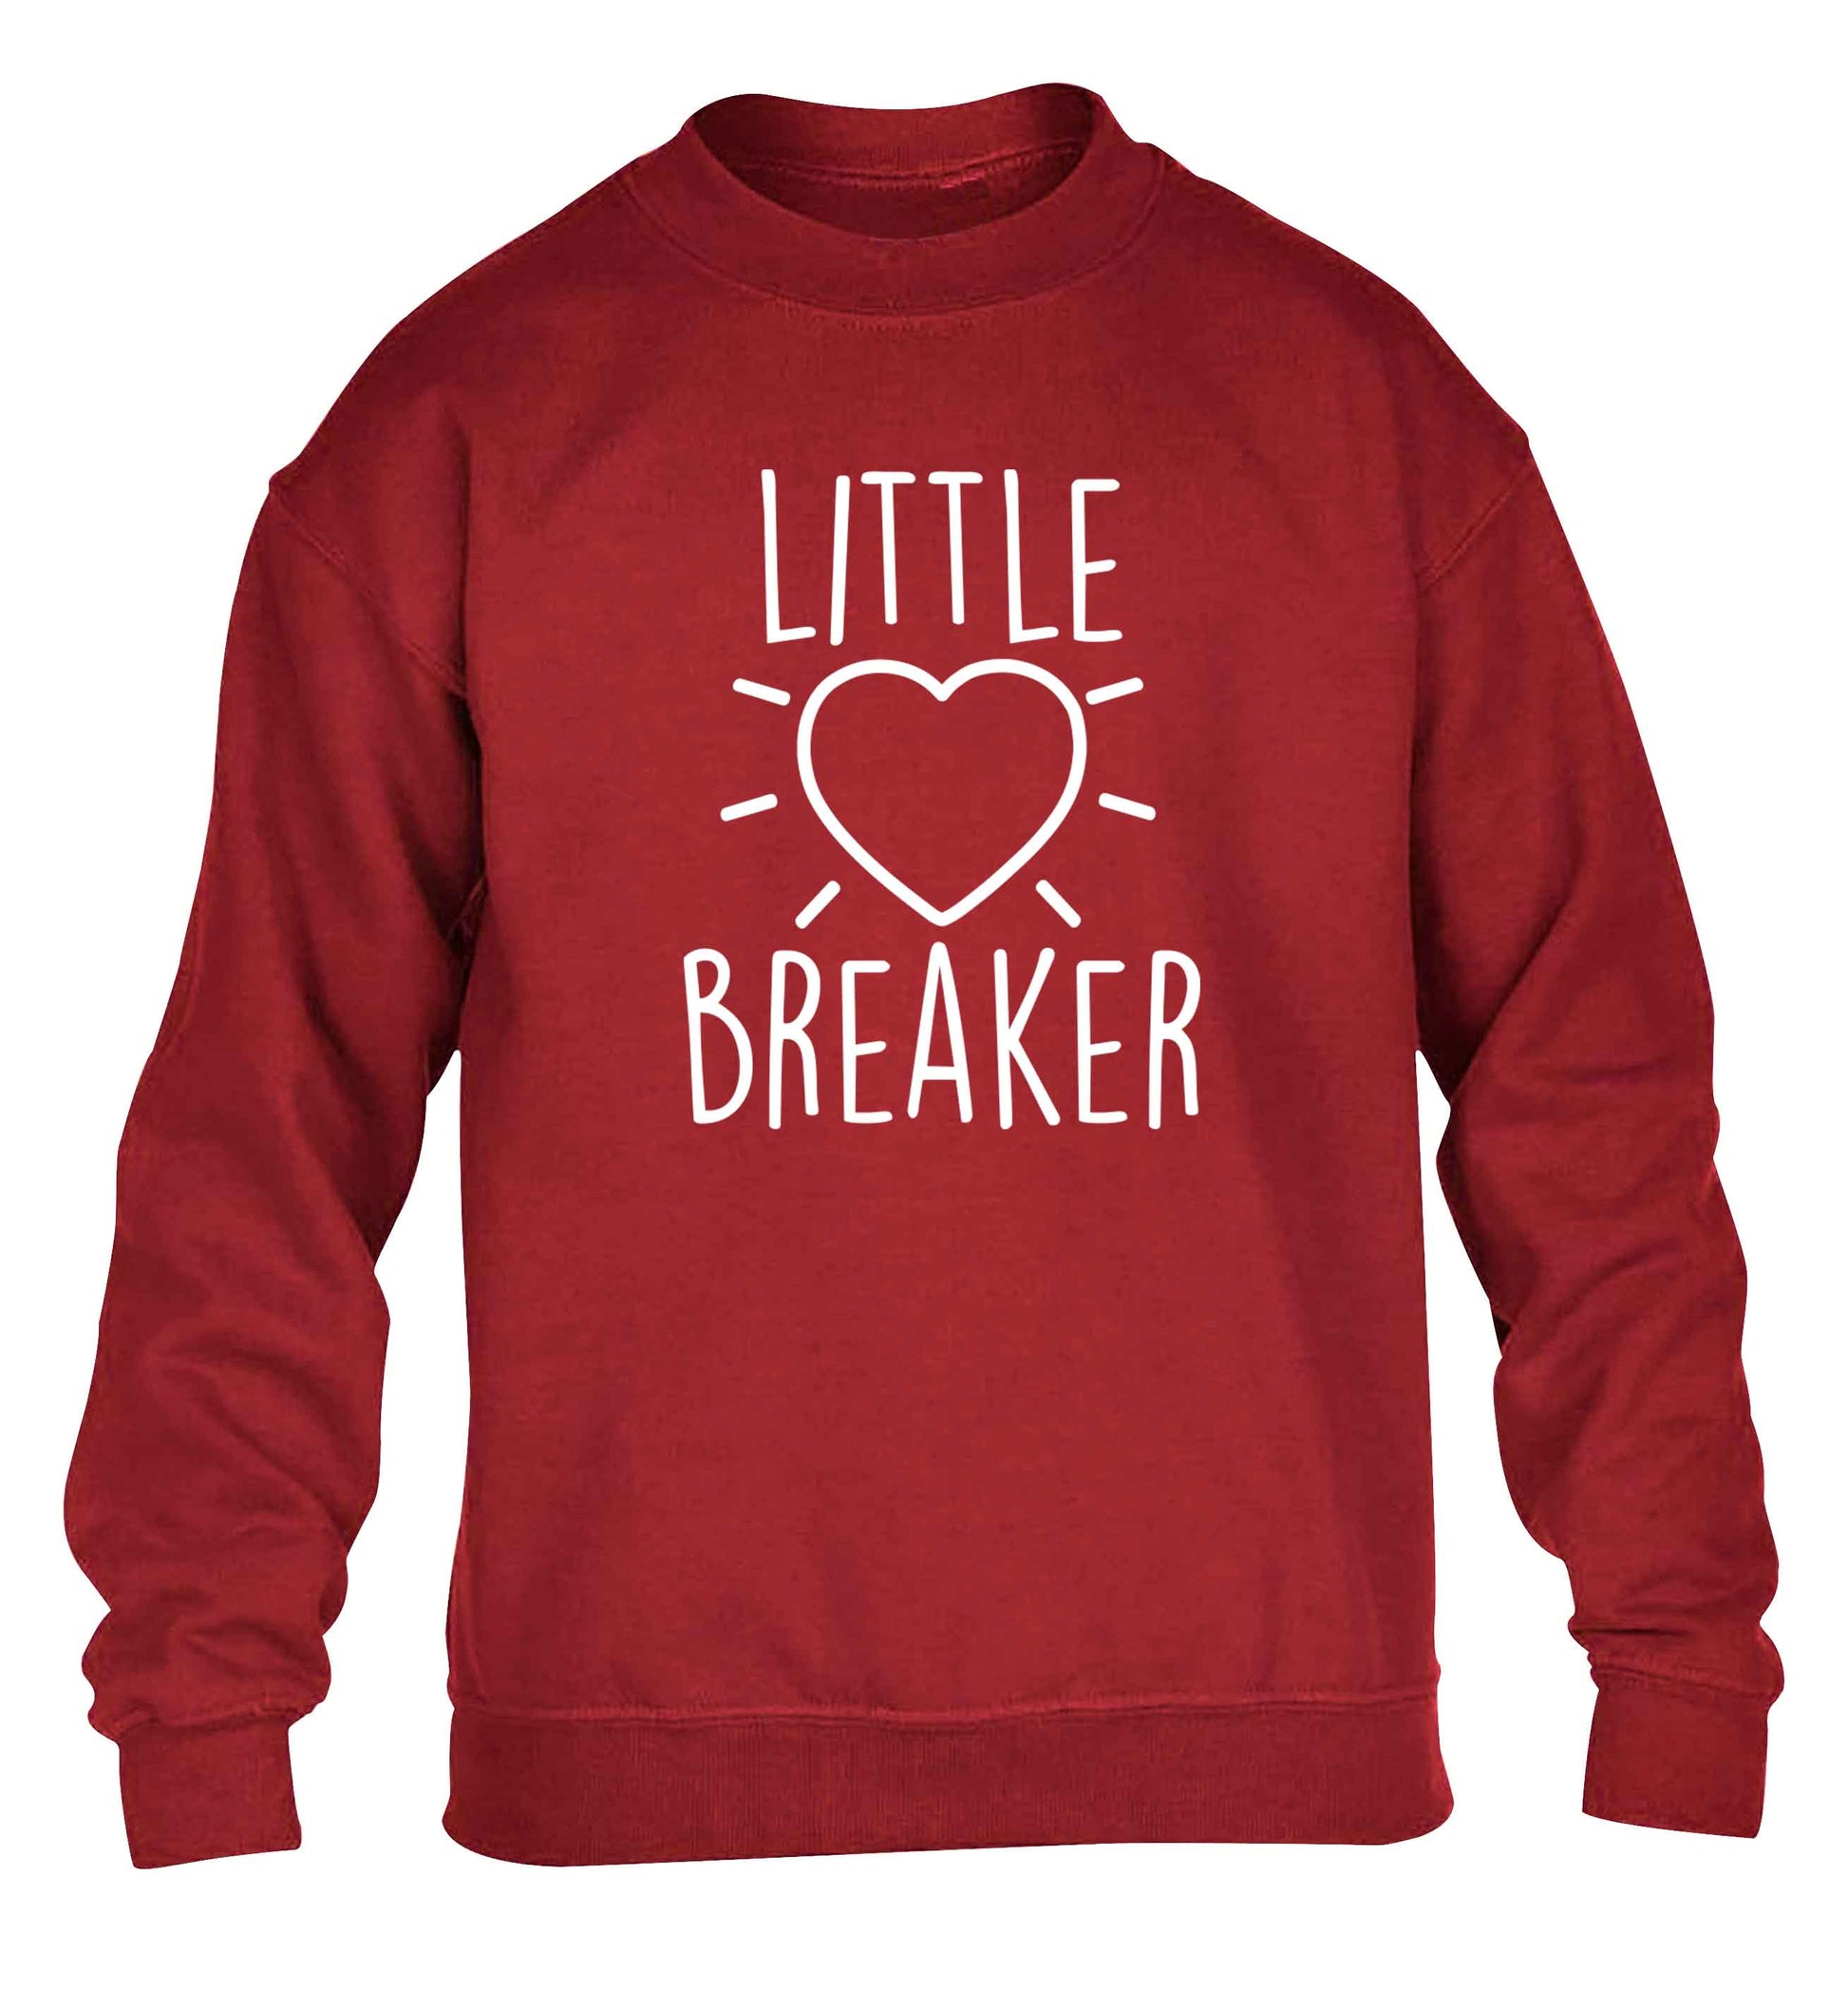 Little heartbreaker children's grey sweater 12-13 Years